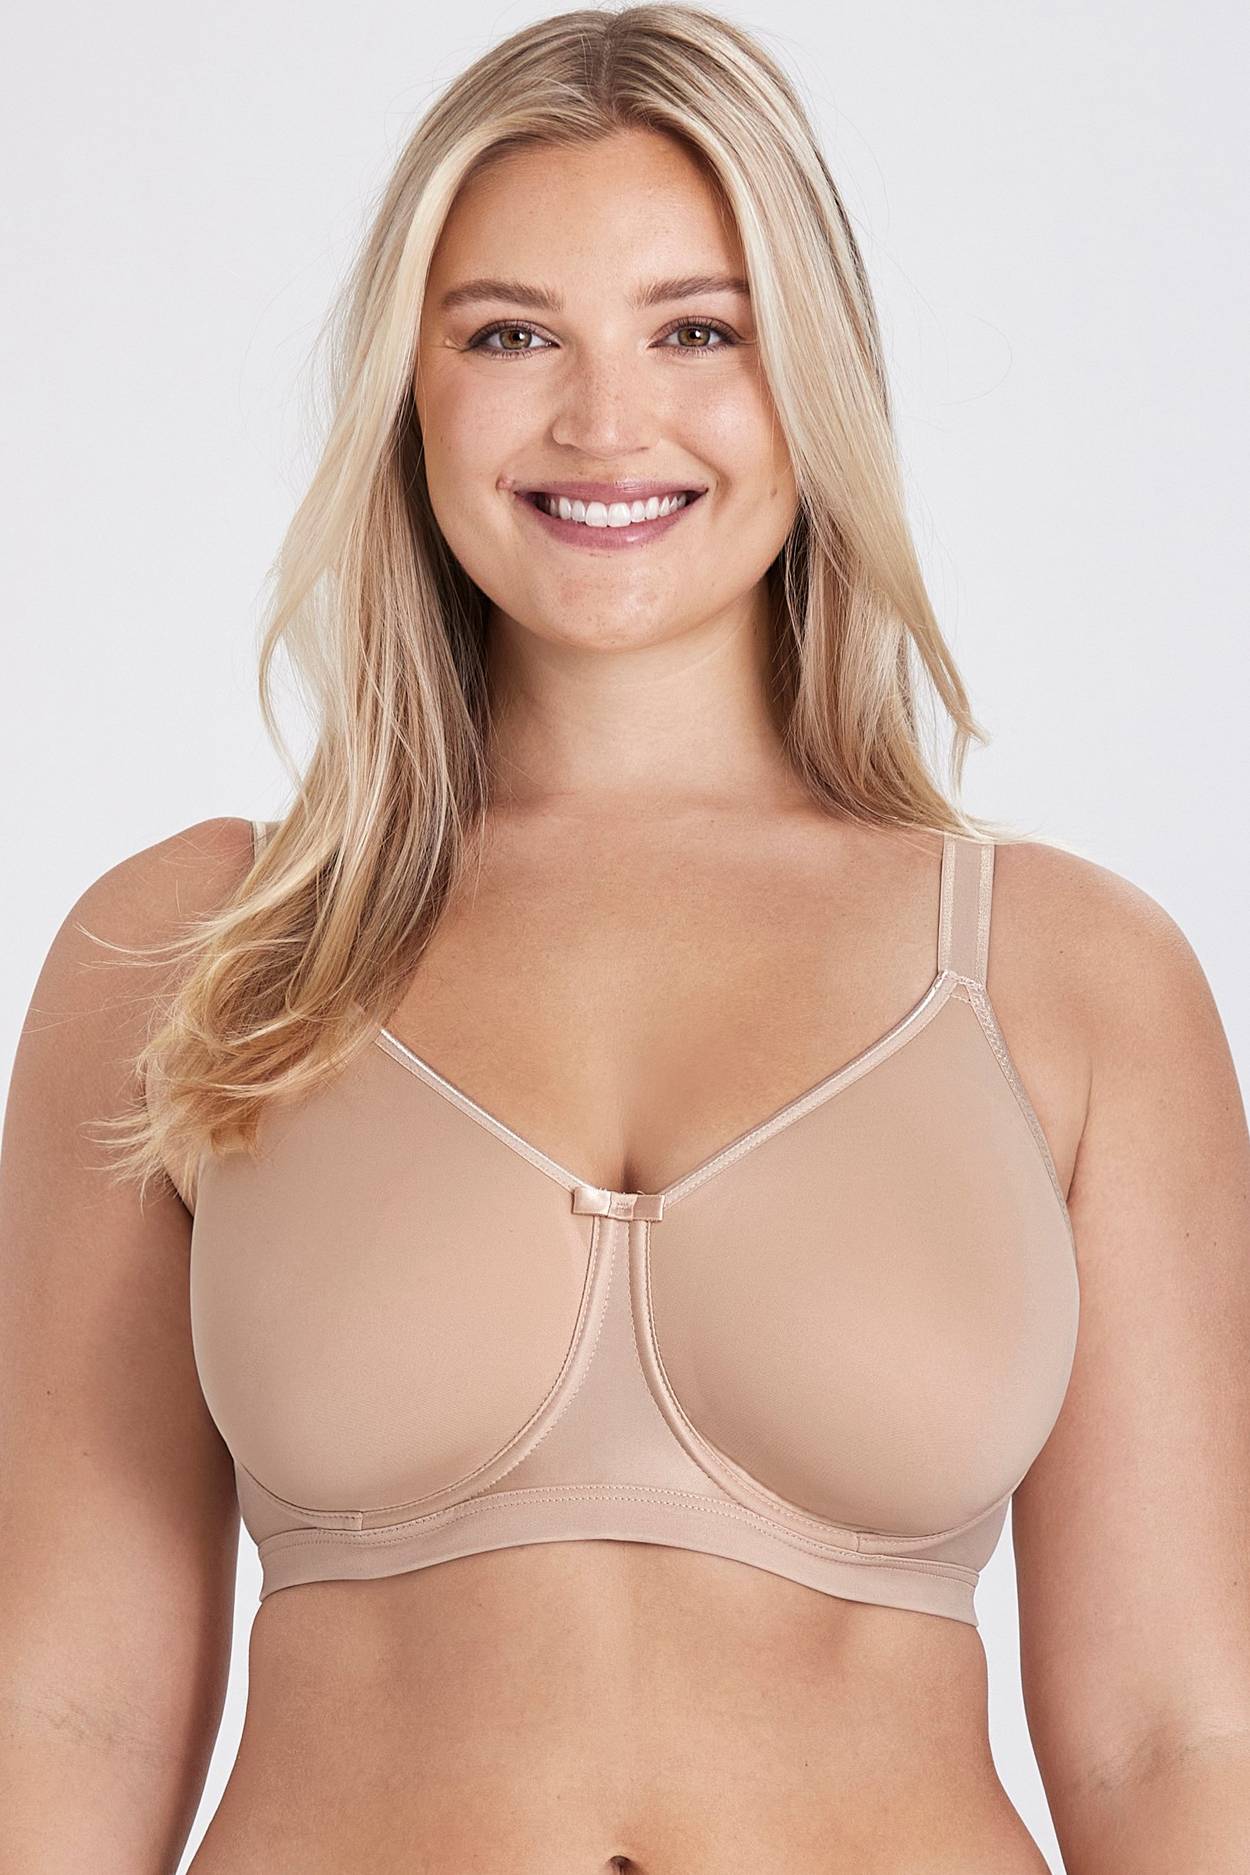 Confident bra